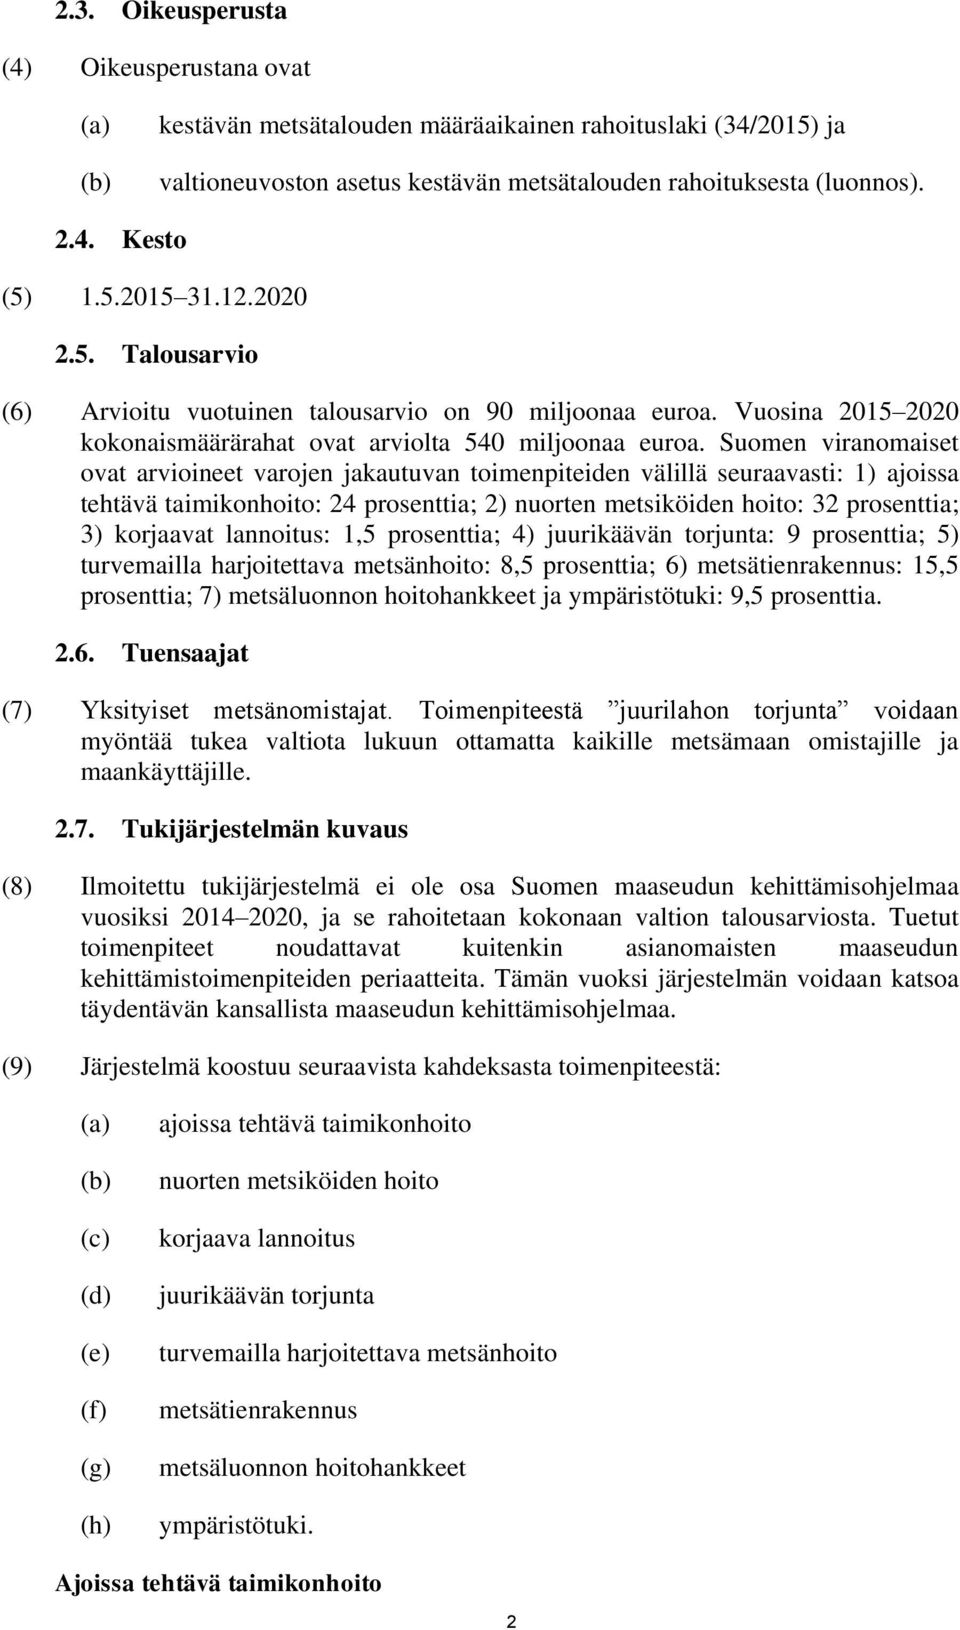 Suomen viranomaiset ovat arvioineet varojen jakautuvan toimenpiteiden välillä seuraavasti: 1) ajoissa tehtävä taimikonhoito: 24 prosenttia; 2) nuorten metsiköiden hoito: 32 prosenttia; 3) korjaavat